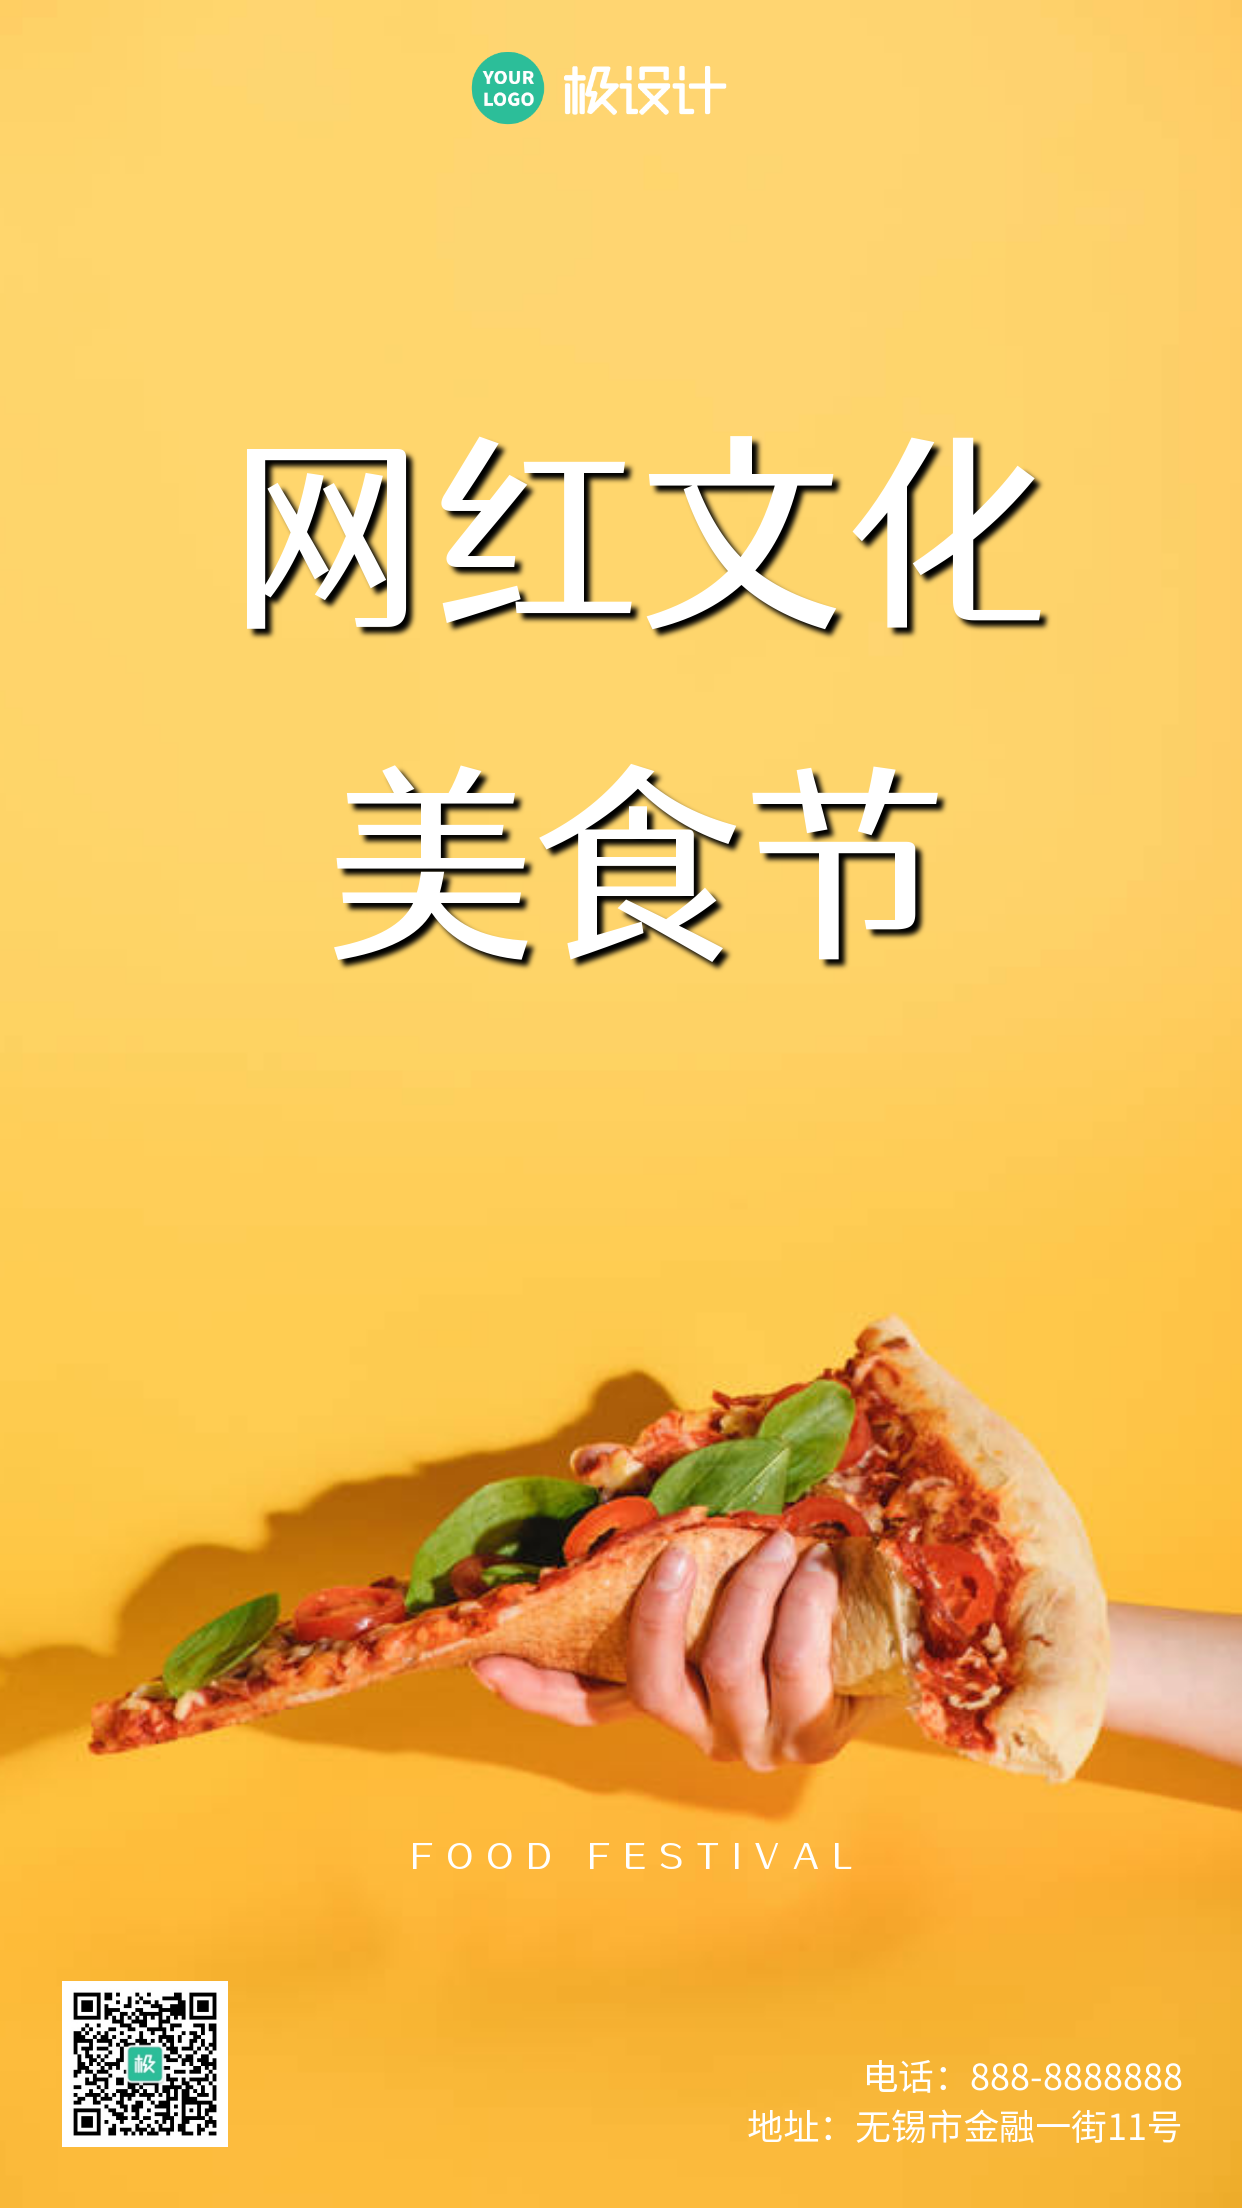 网红文化美食节灰色简约大气营销海报